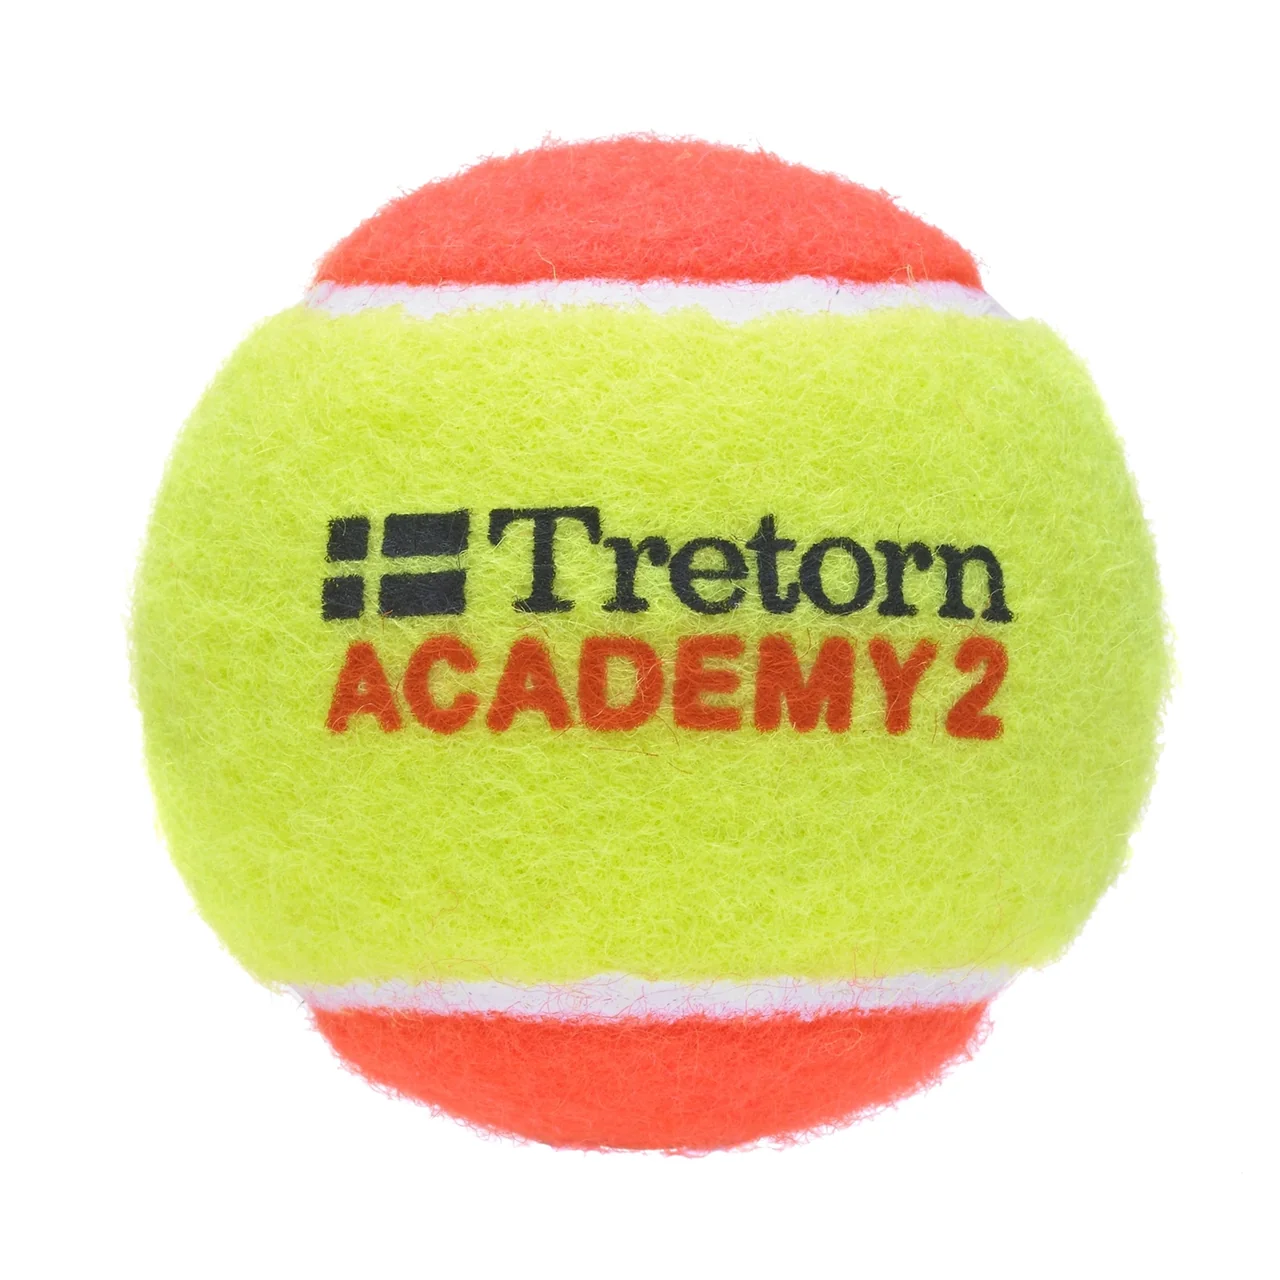 Tretorn Academy Stage 2. 72 bollar